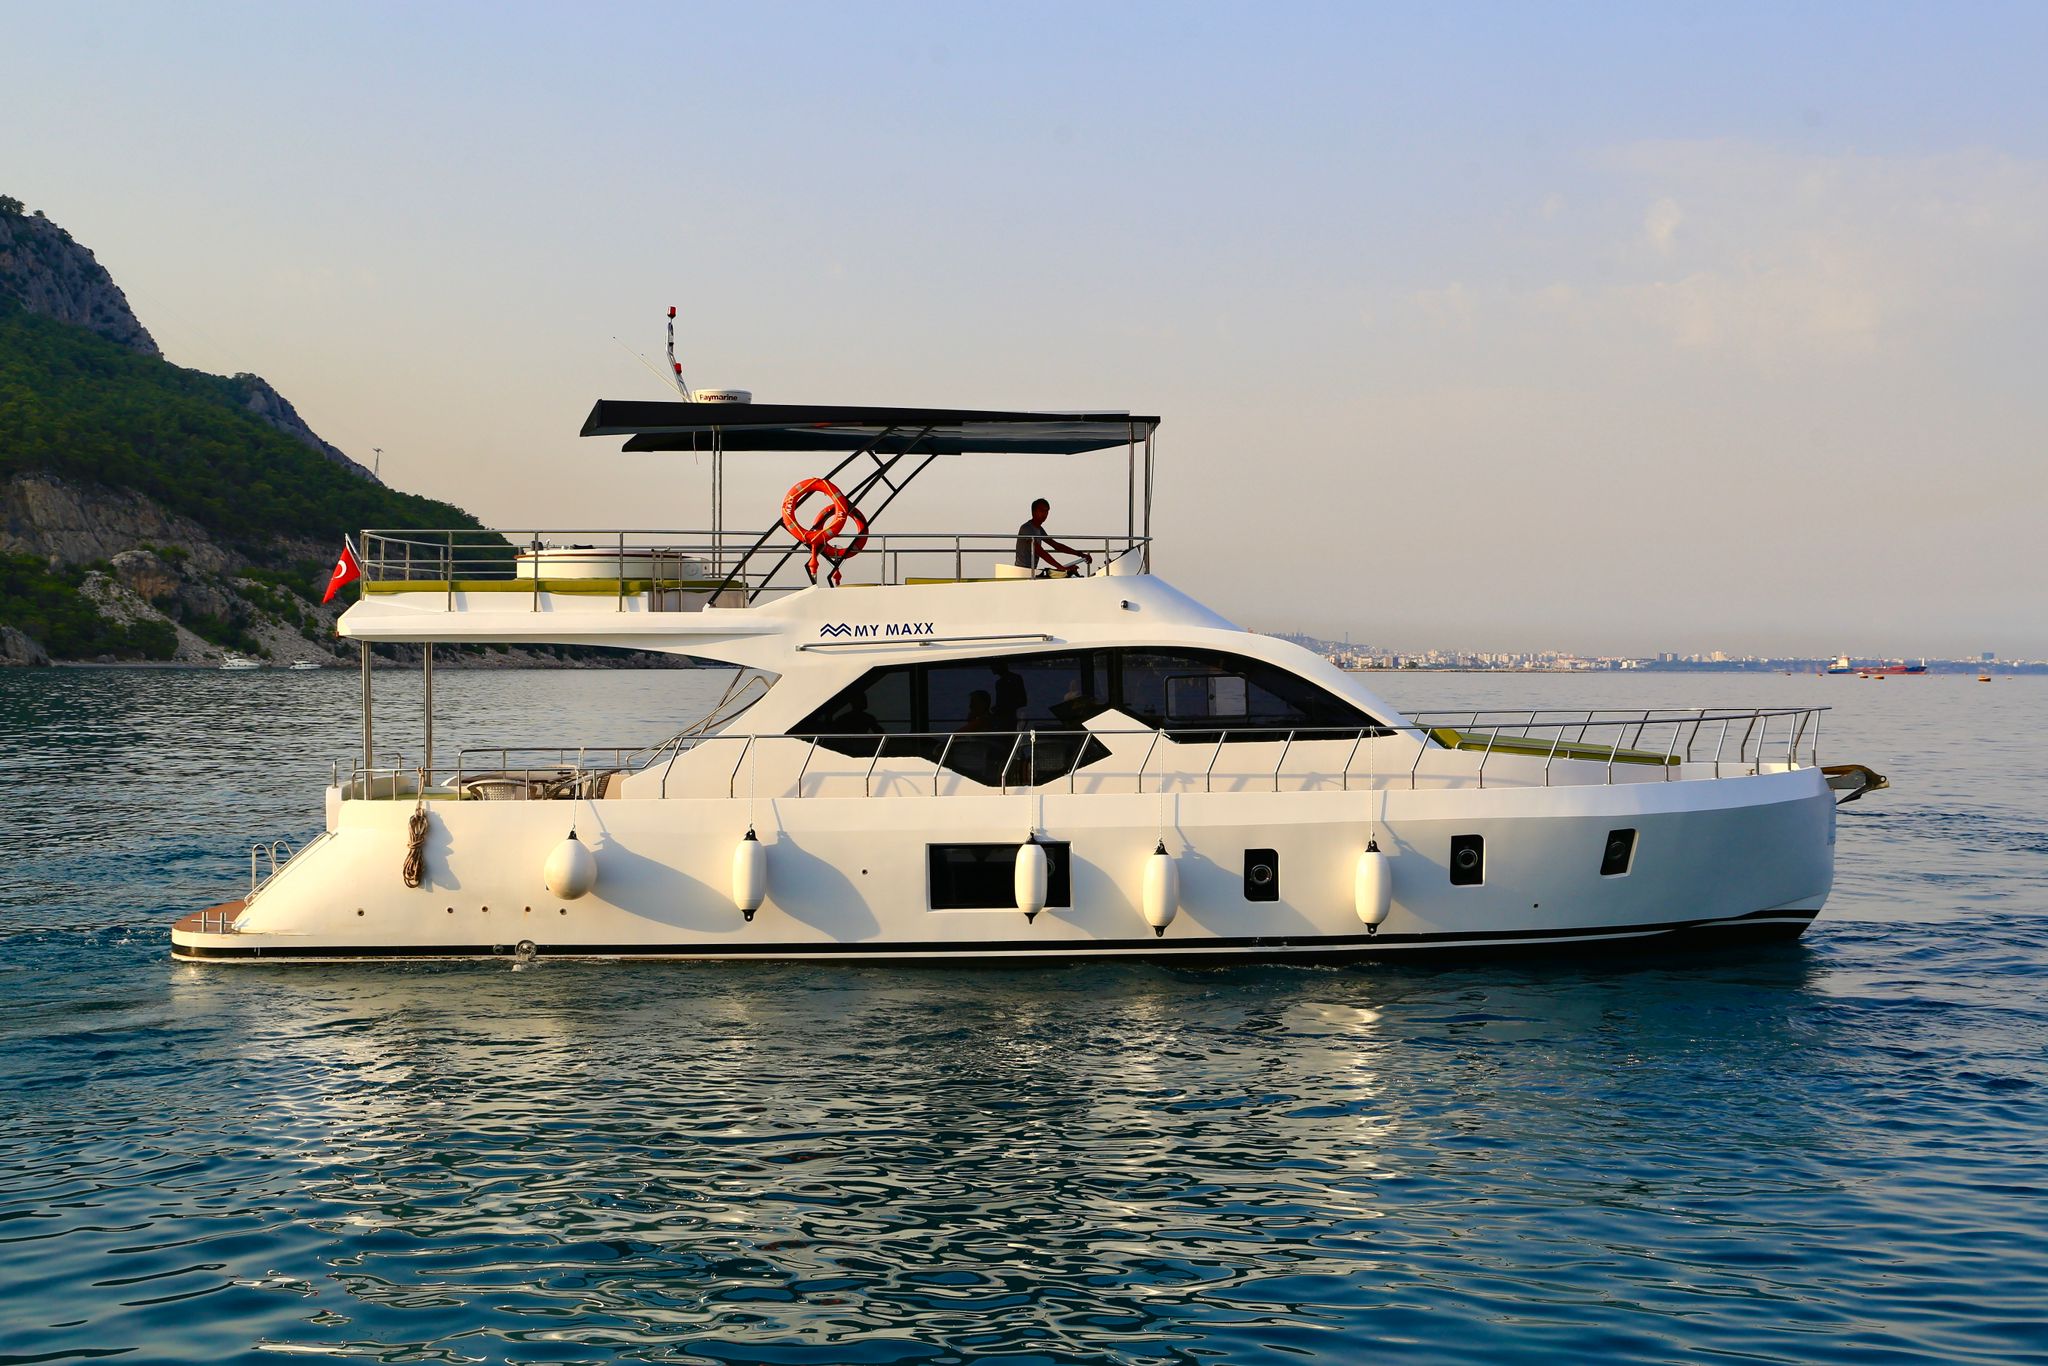 Стоимость аренды частной яхты в Анталии вы можете узнать онлайн по телефону +905321004567 в любое время суток.